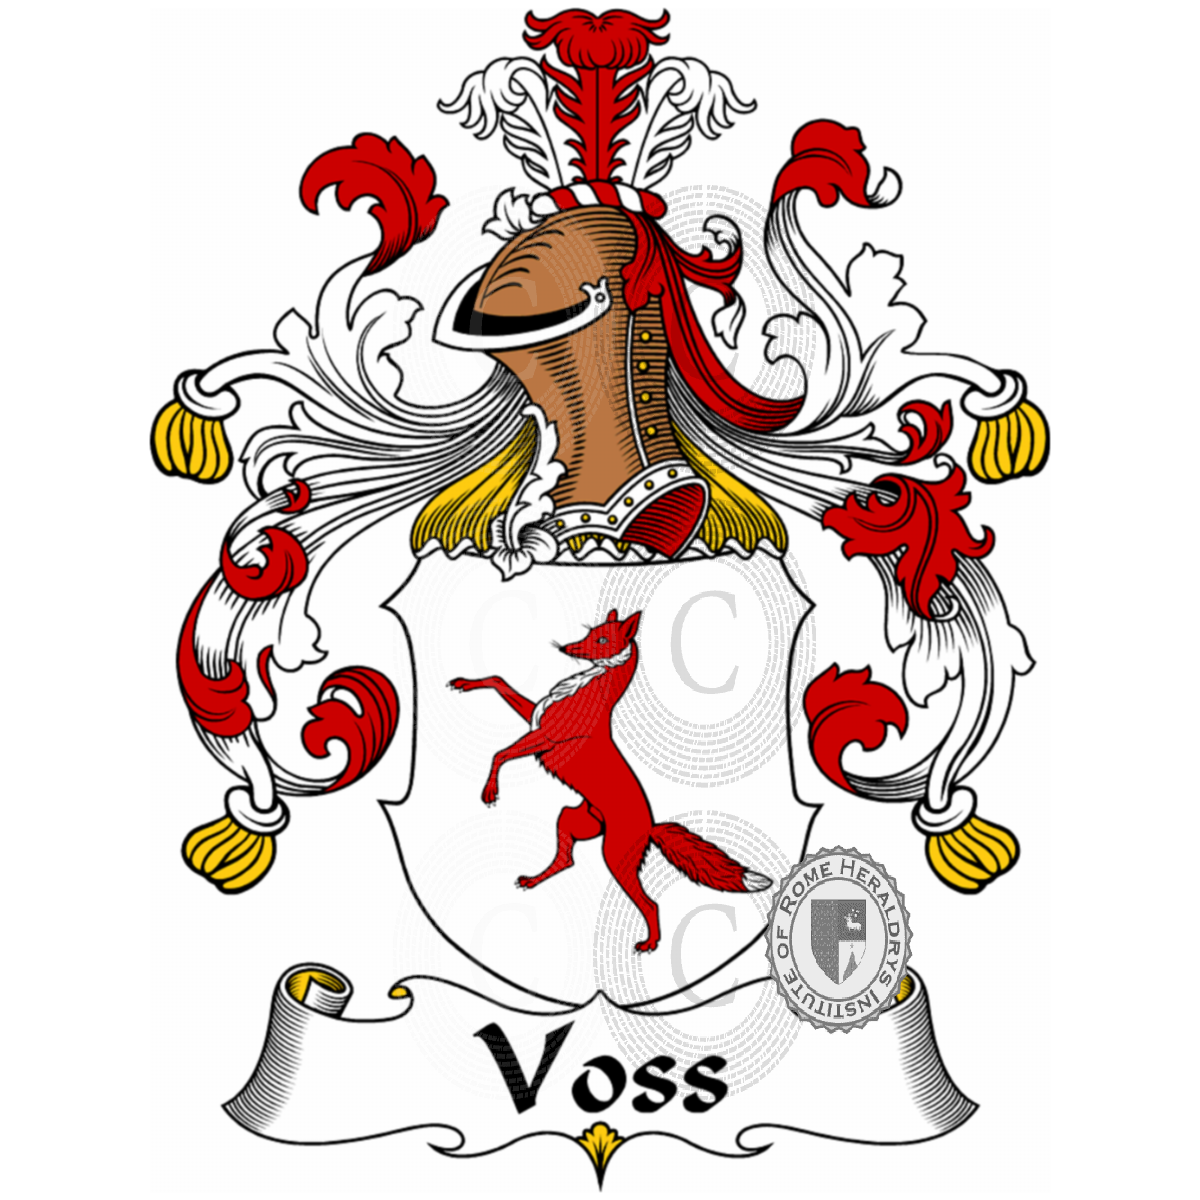 Brasão da famíliaVoss, Voss